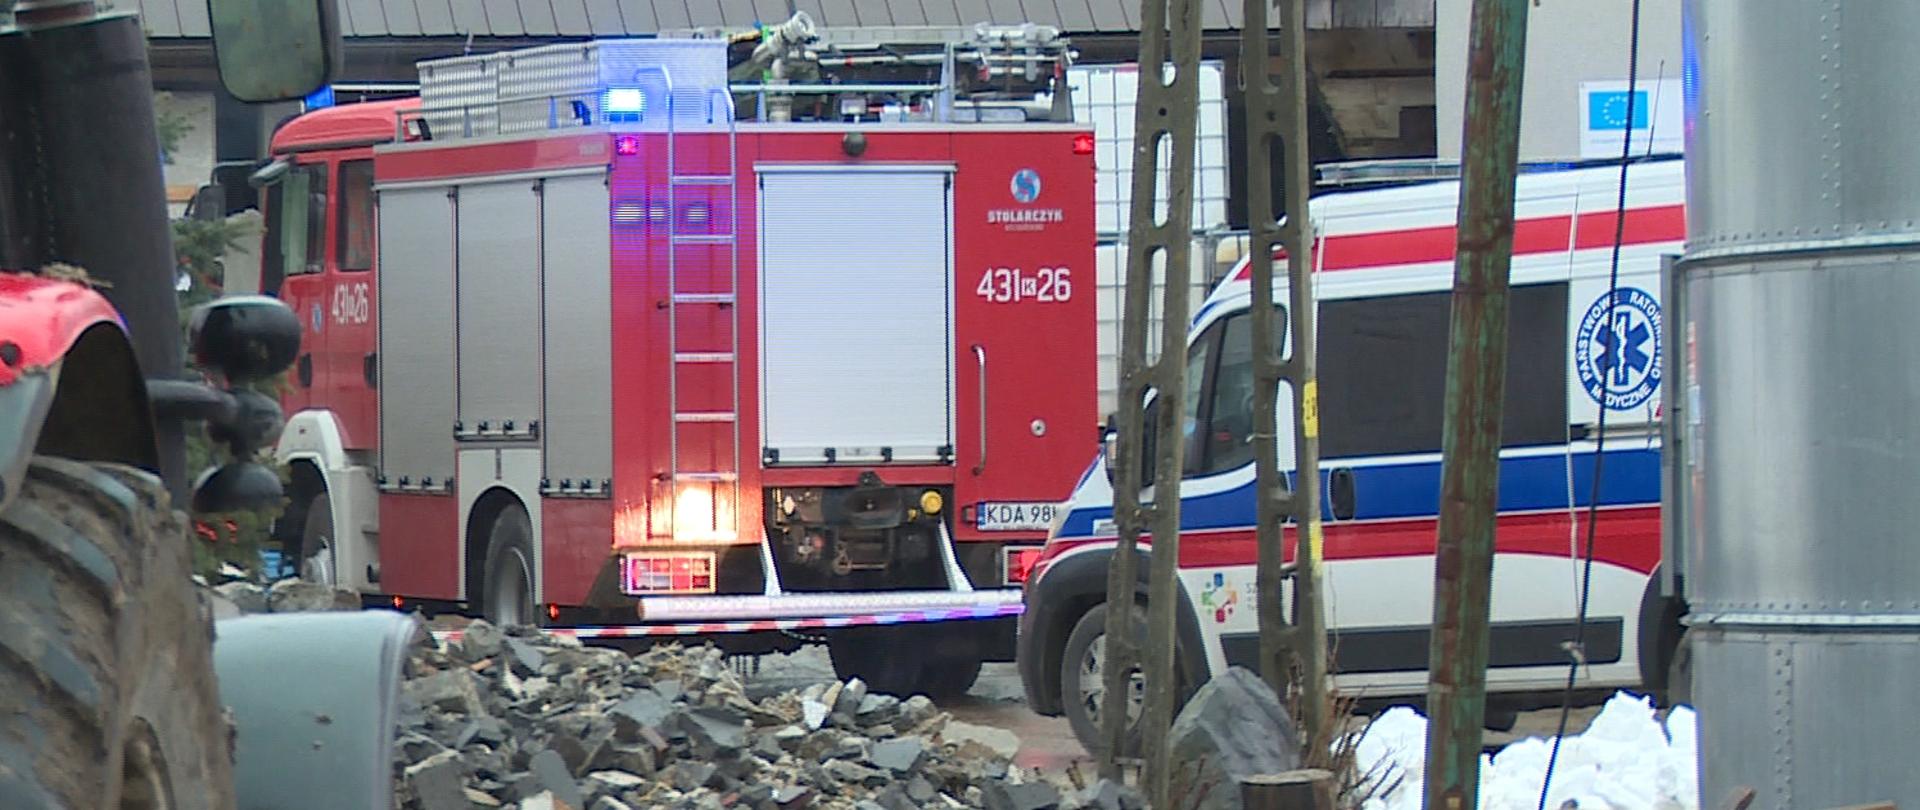 Na zdjęciu widać w dalszym planie samochód pożarniczy oraz Zespół ratownictwa medycznego, stojące przed budynkami, na zdjęciu widoczny jest także ciągnik oraz sterta gruzu.